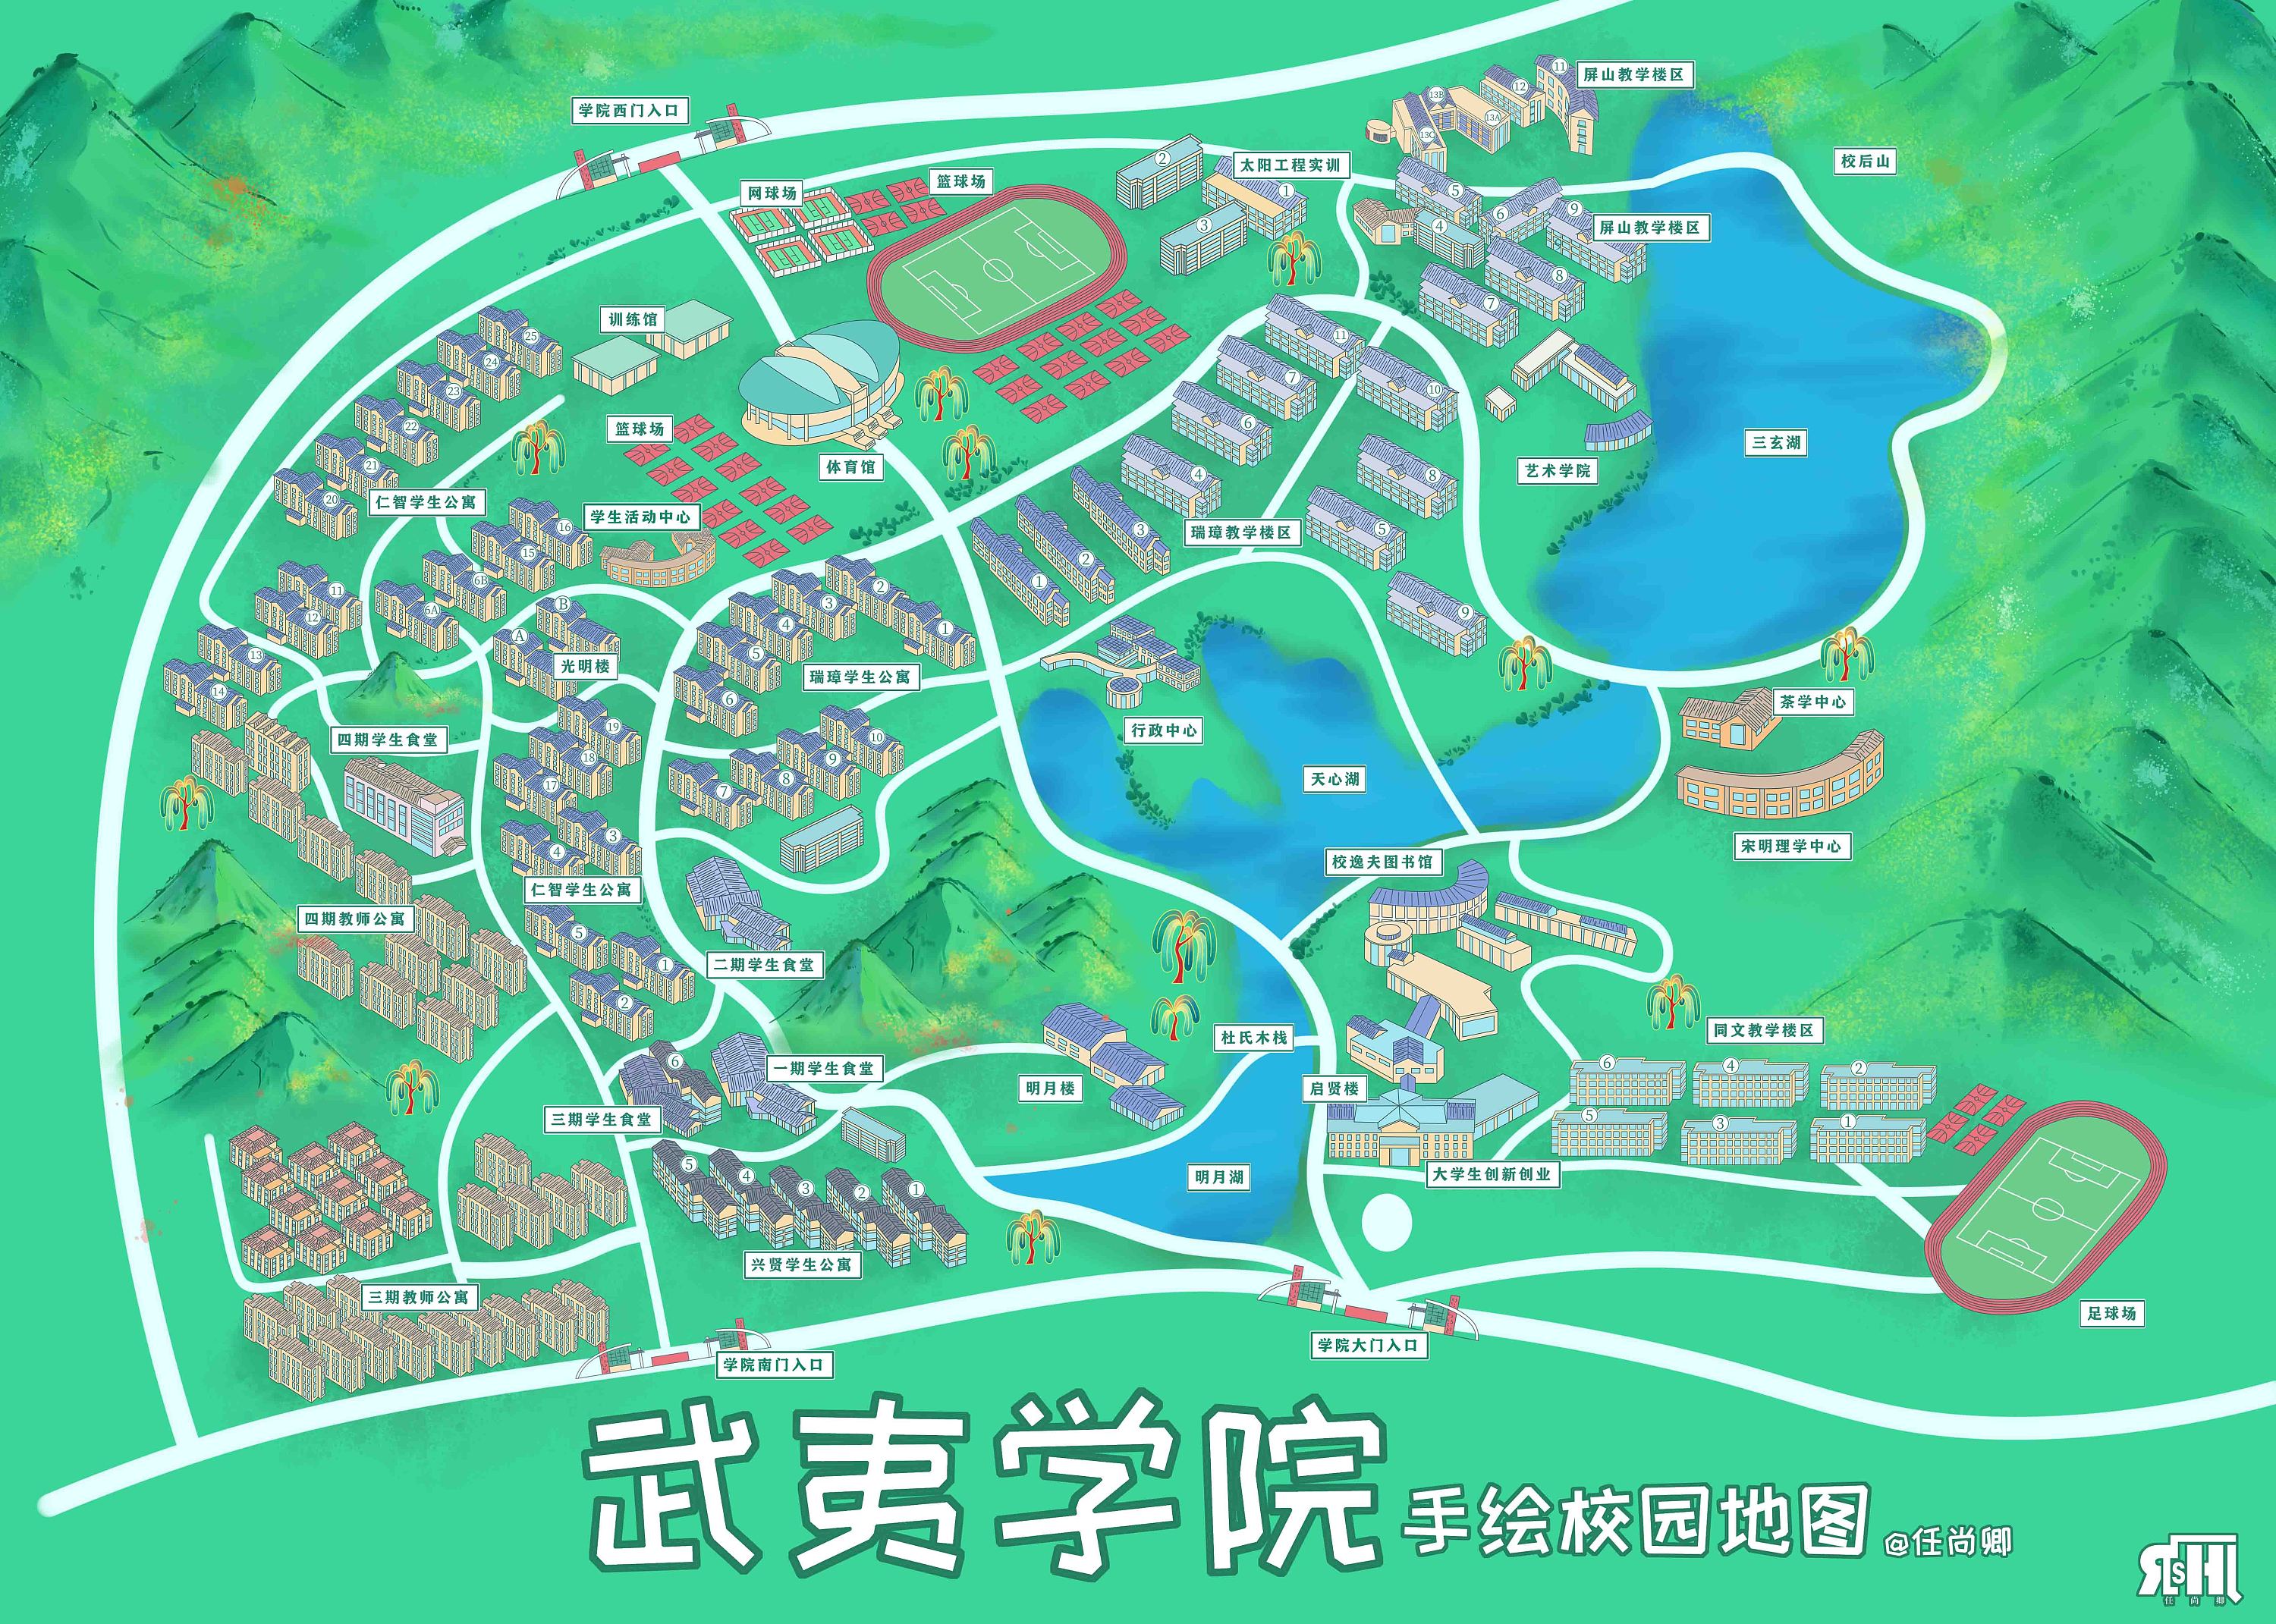 新版武夷学院手绘校园地图